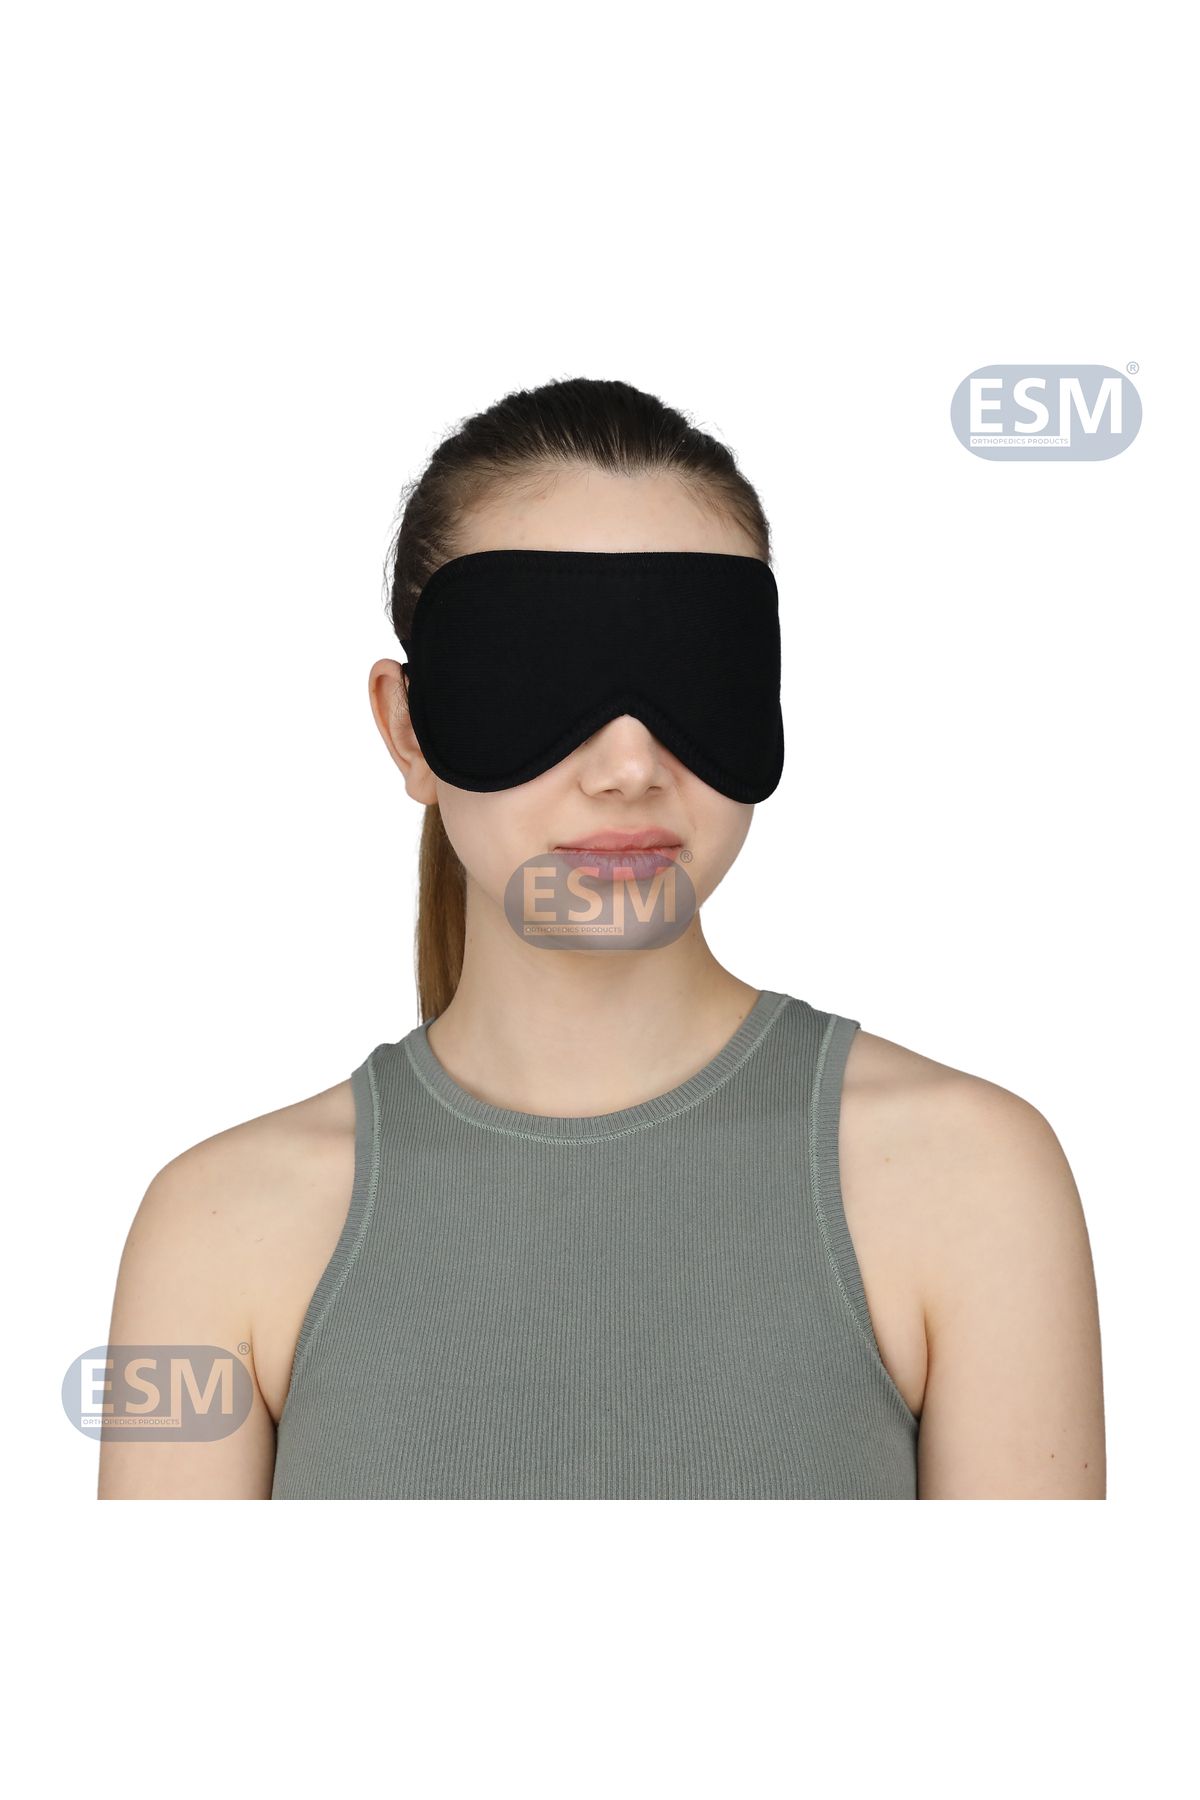 ESM Uyku Maskesi Işık Önleyici Göz Bandı Unisex Maske Seyahat Ve Uyku Göz Bandı Siyah